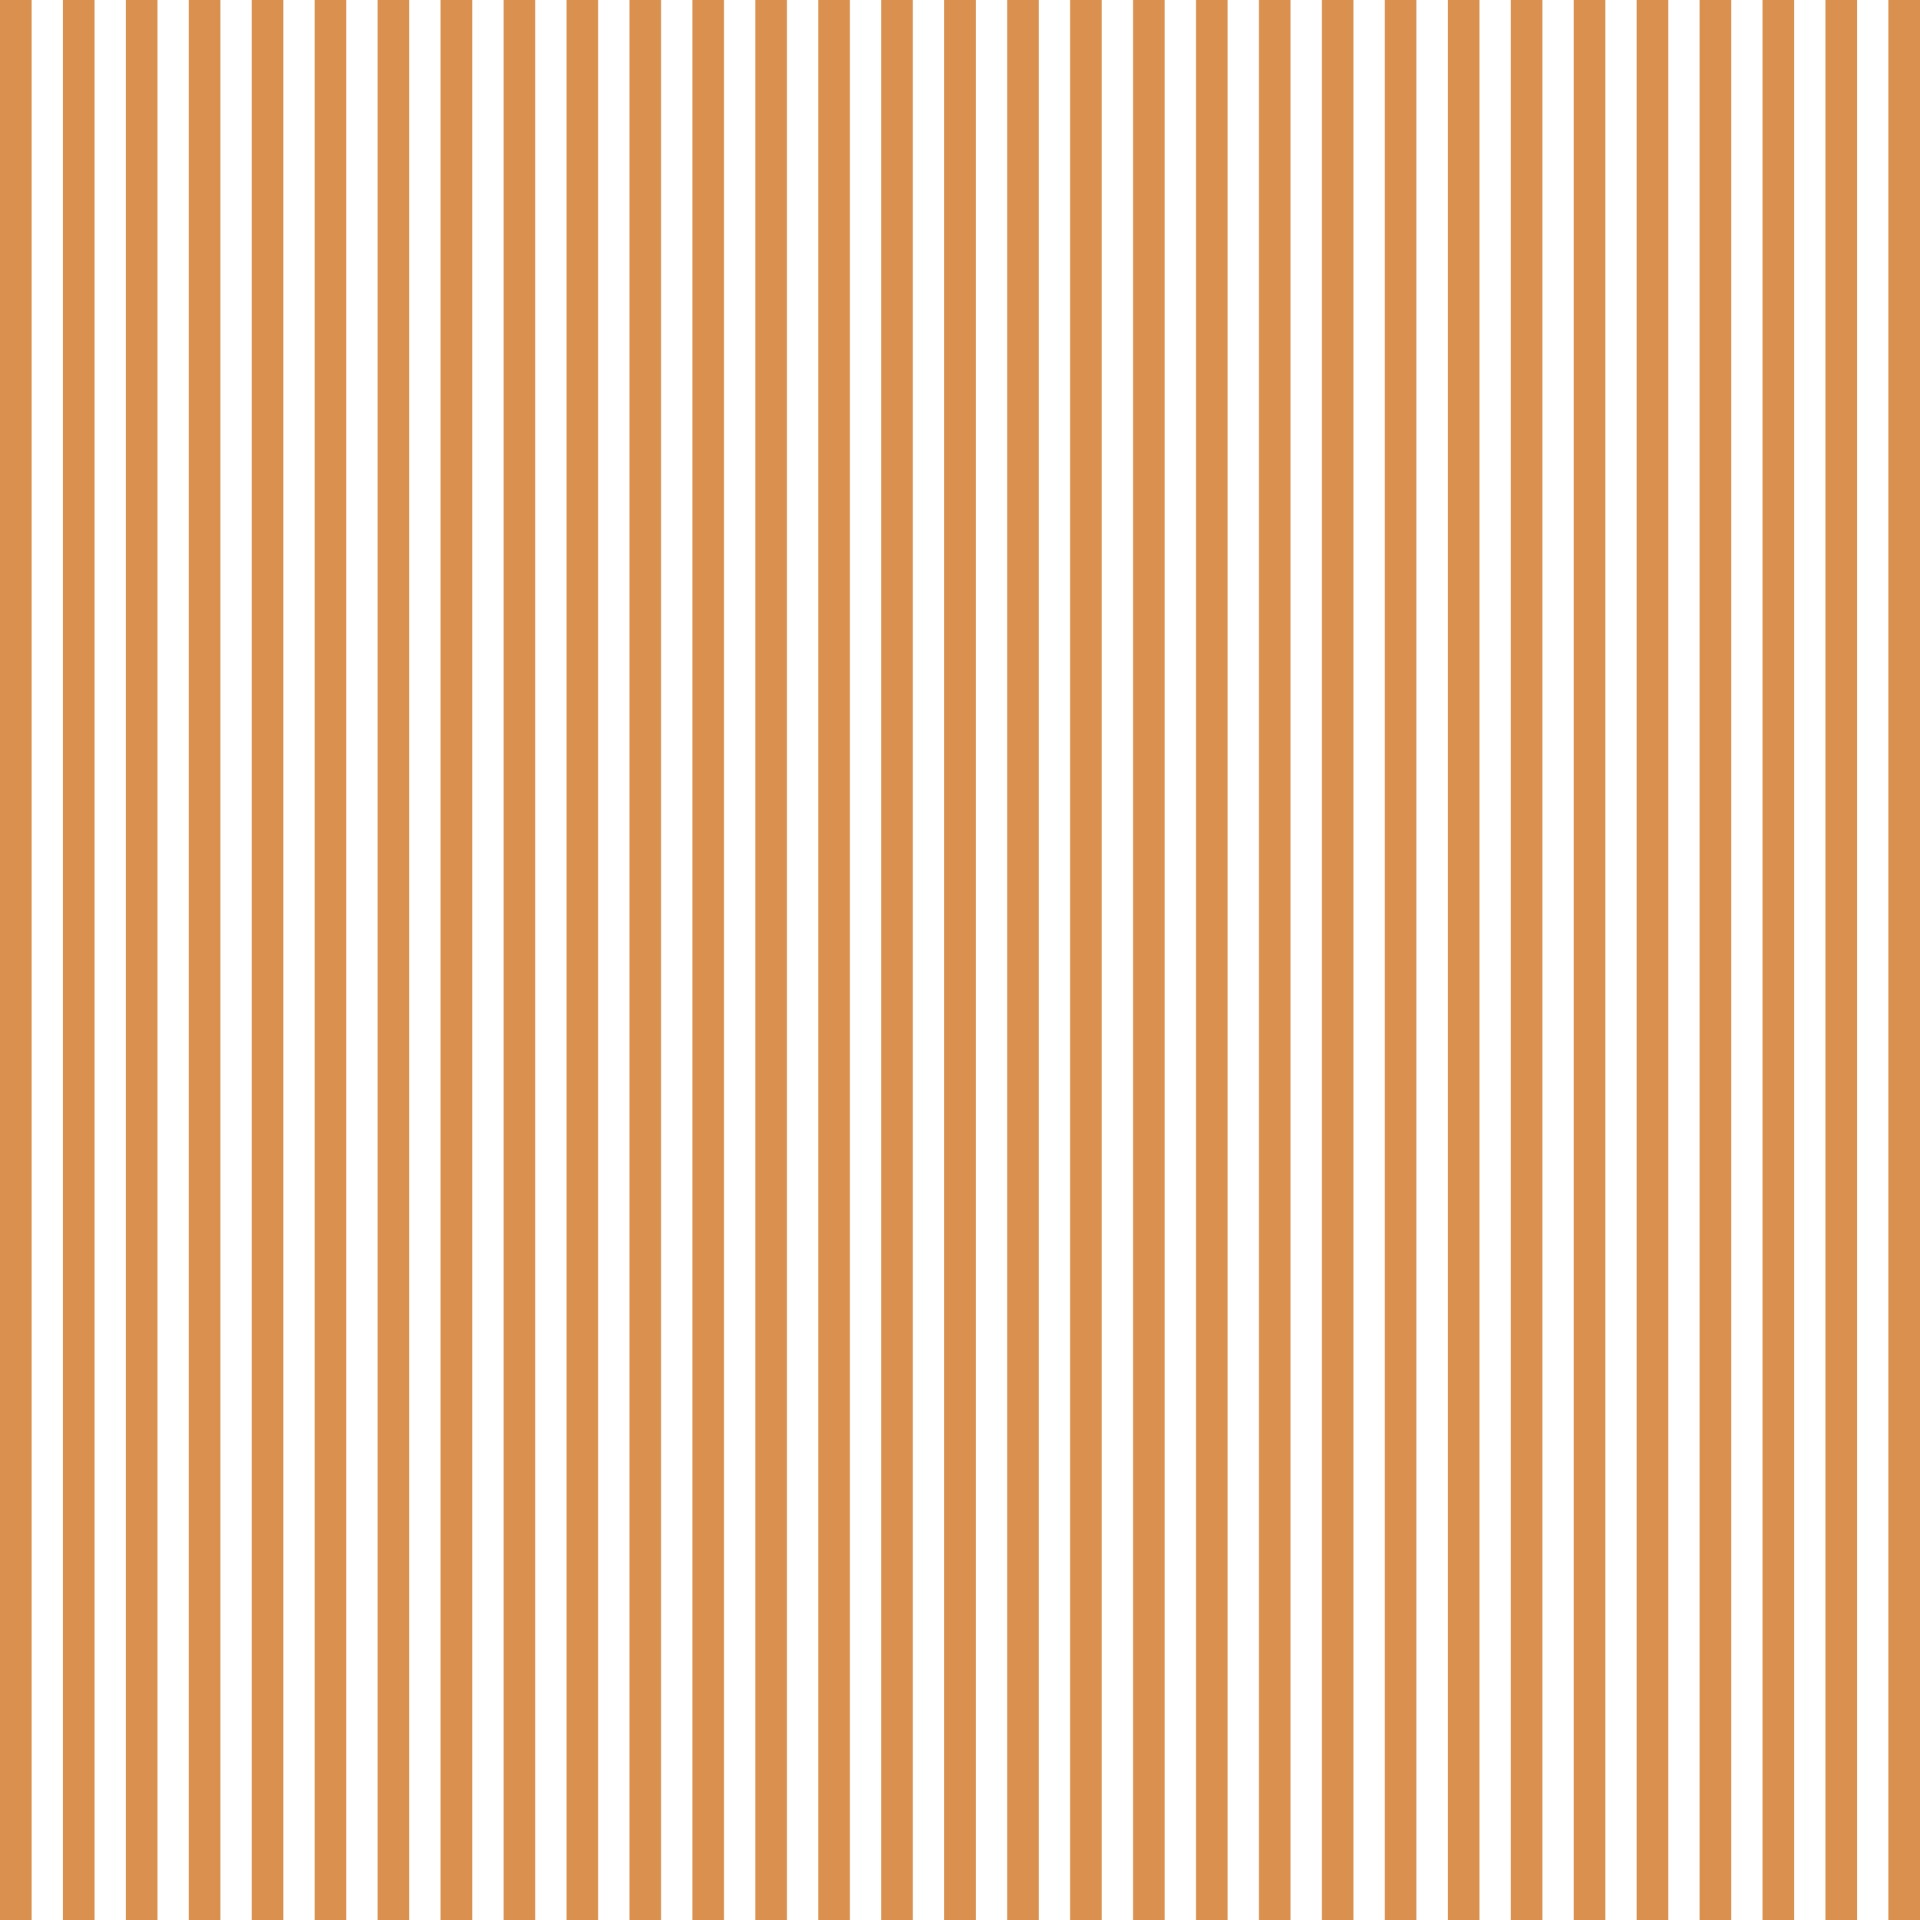 stripes pattern wallpaper free photo